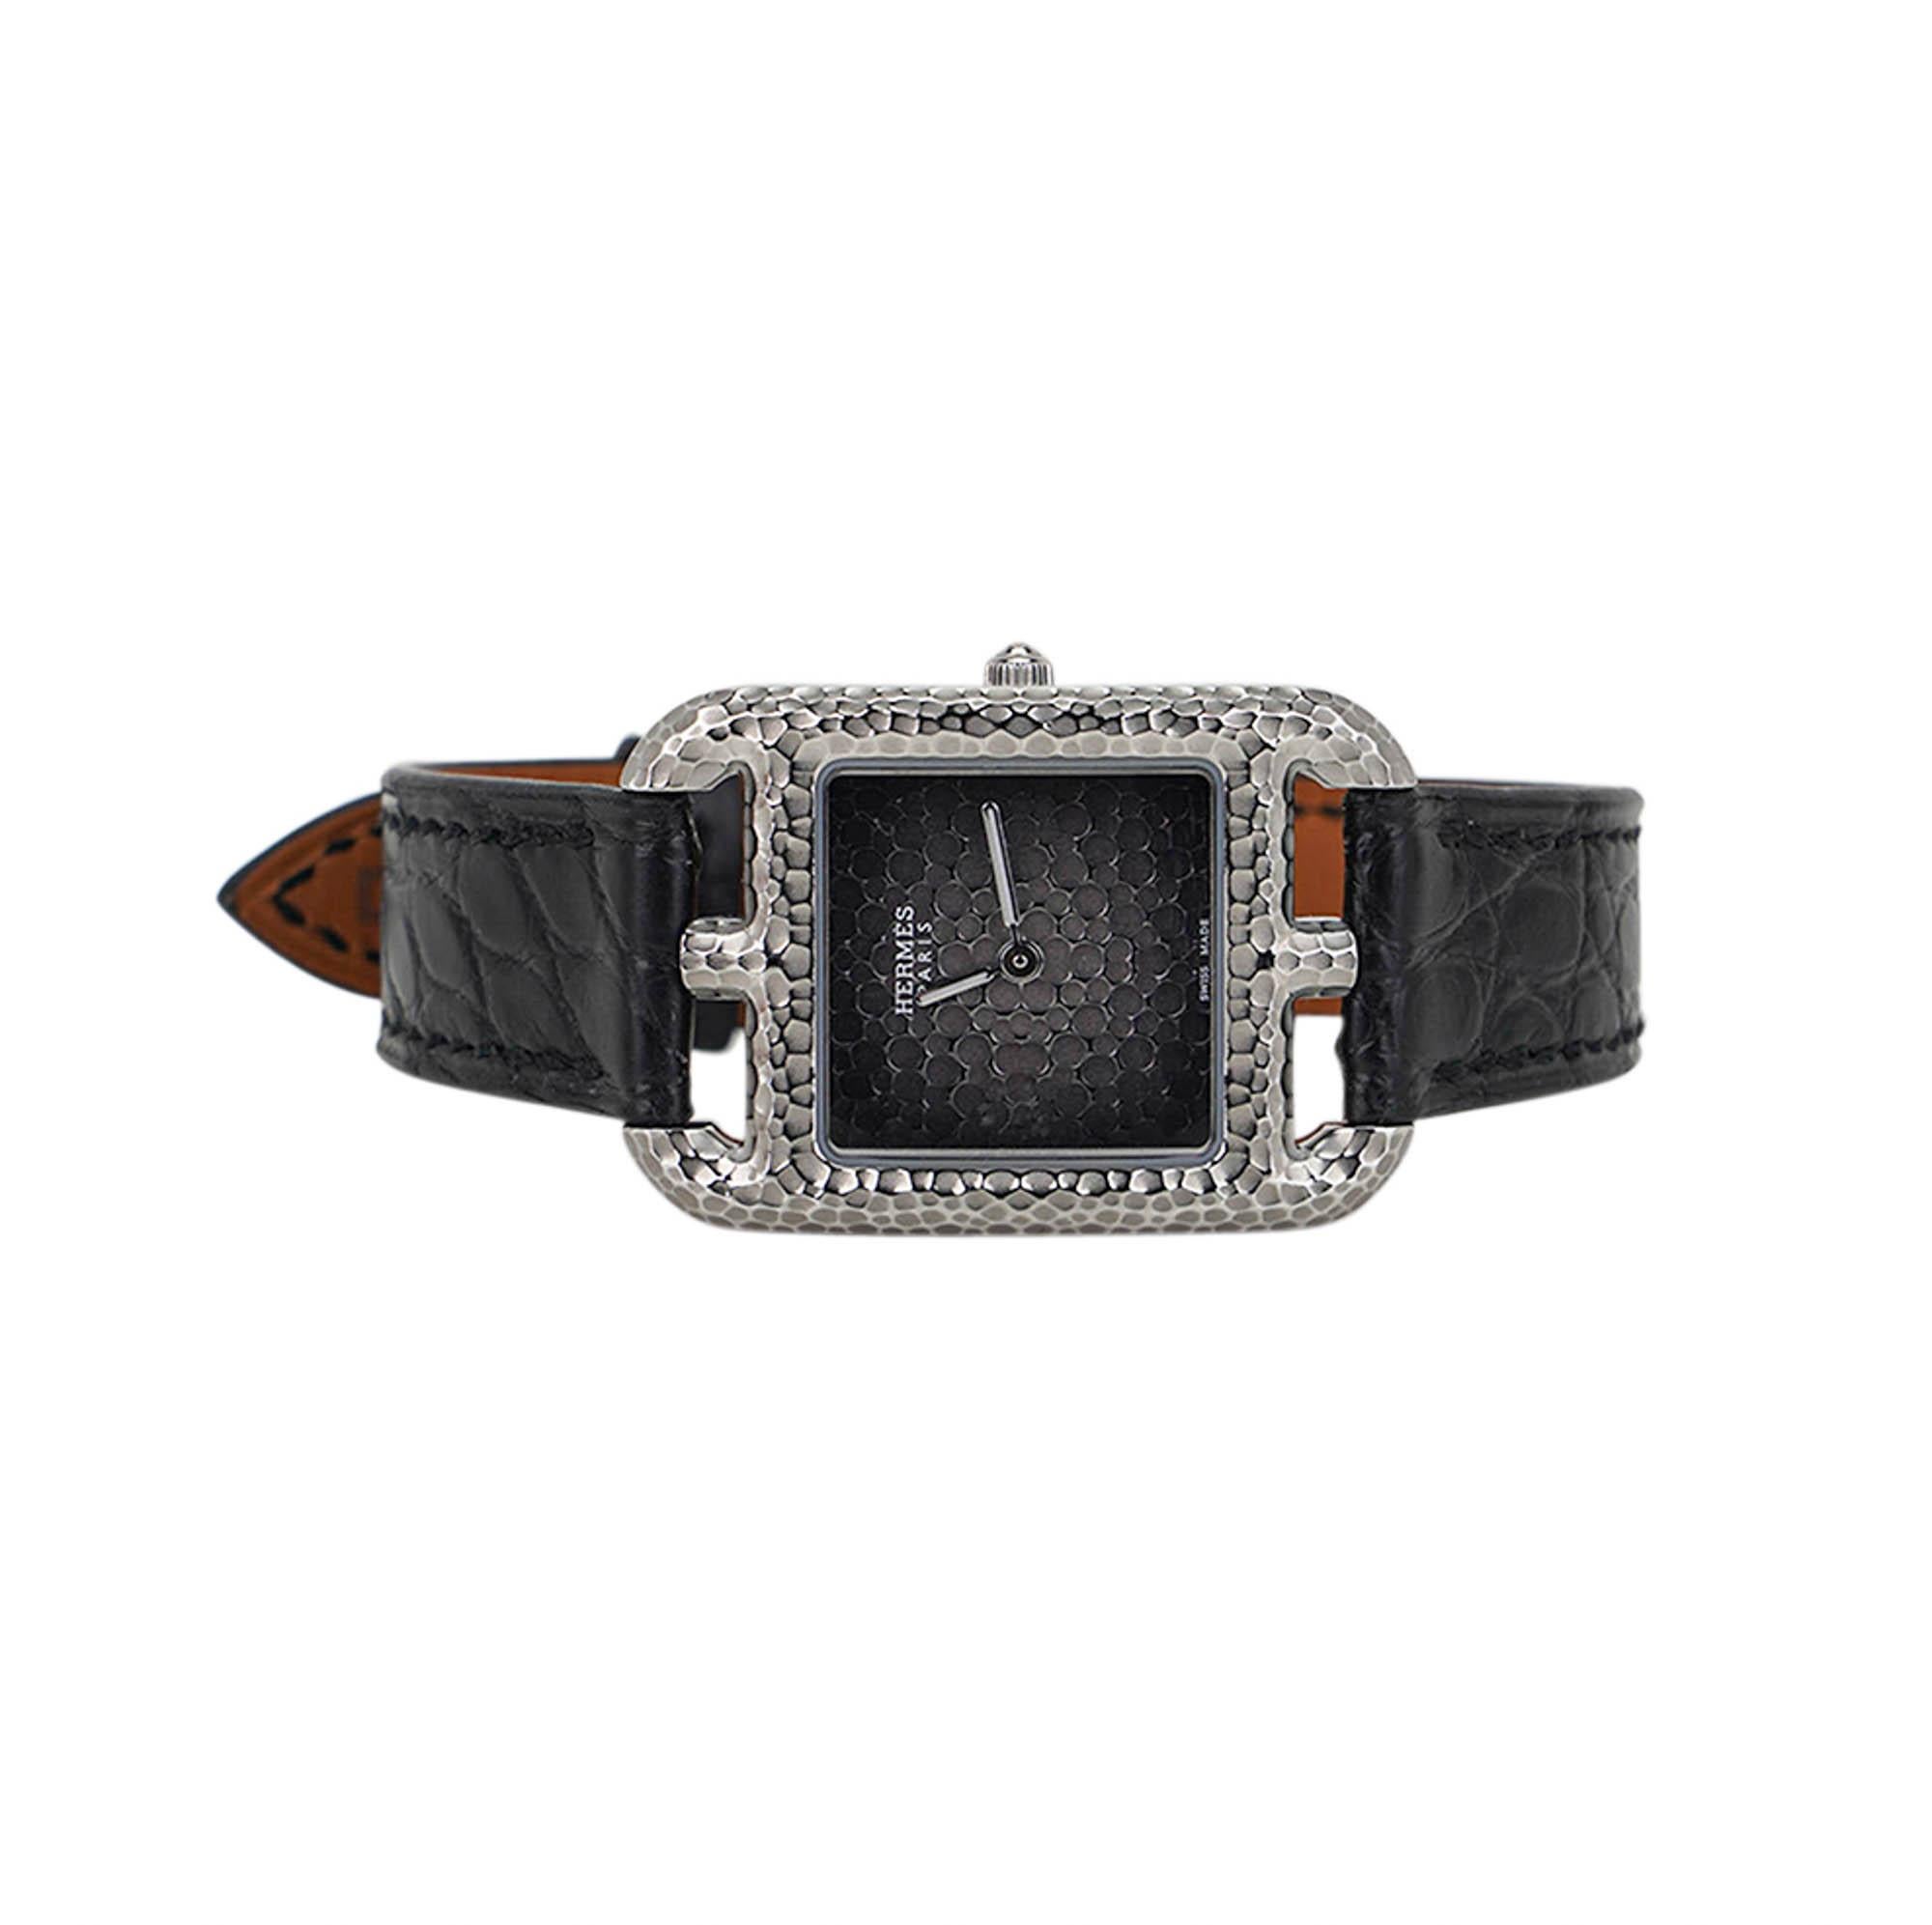 Mightychic propose une montre à quartz Hermes Cape Cod en acier inoxydable martelé.
Cette version avant-gardiste du design d'Henri d'Origny, inspiré de la Chaine d'Ancre de 1991, se caractérise par une surface martelée du boîtier.
Le cadran nuancé